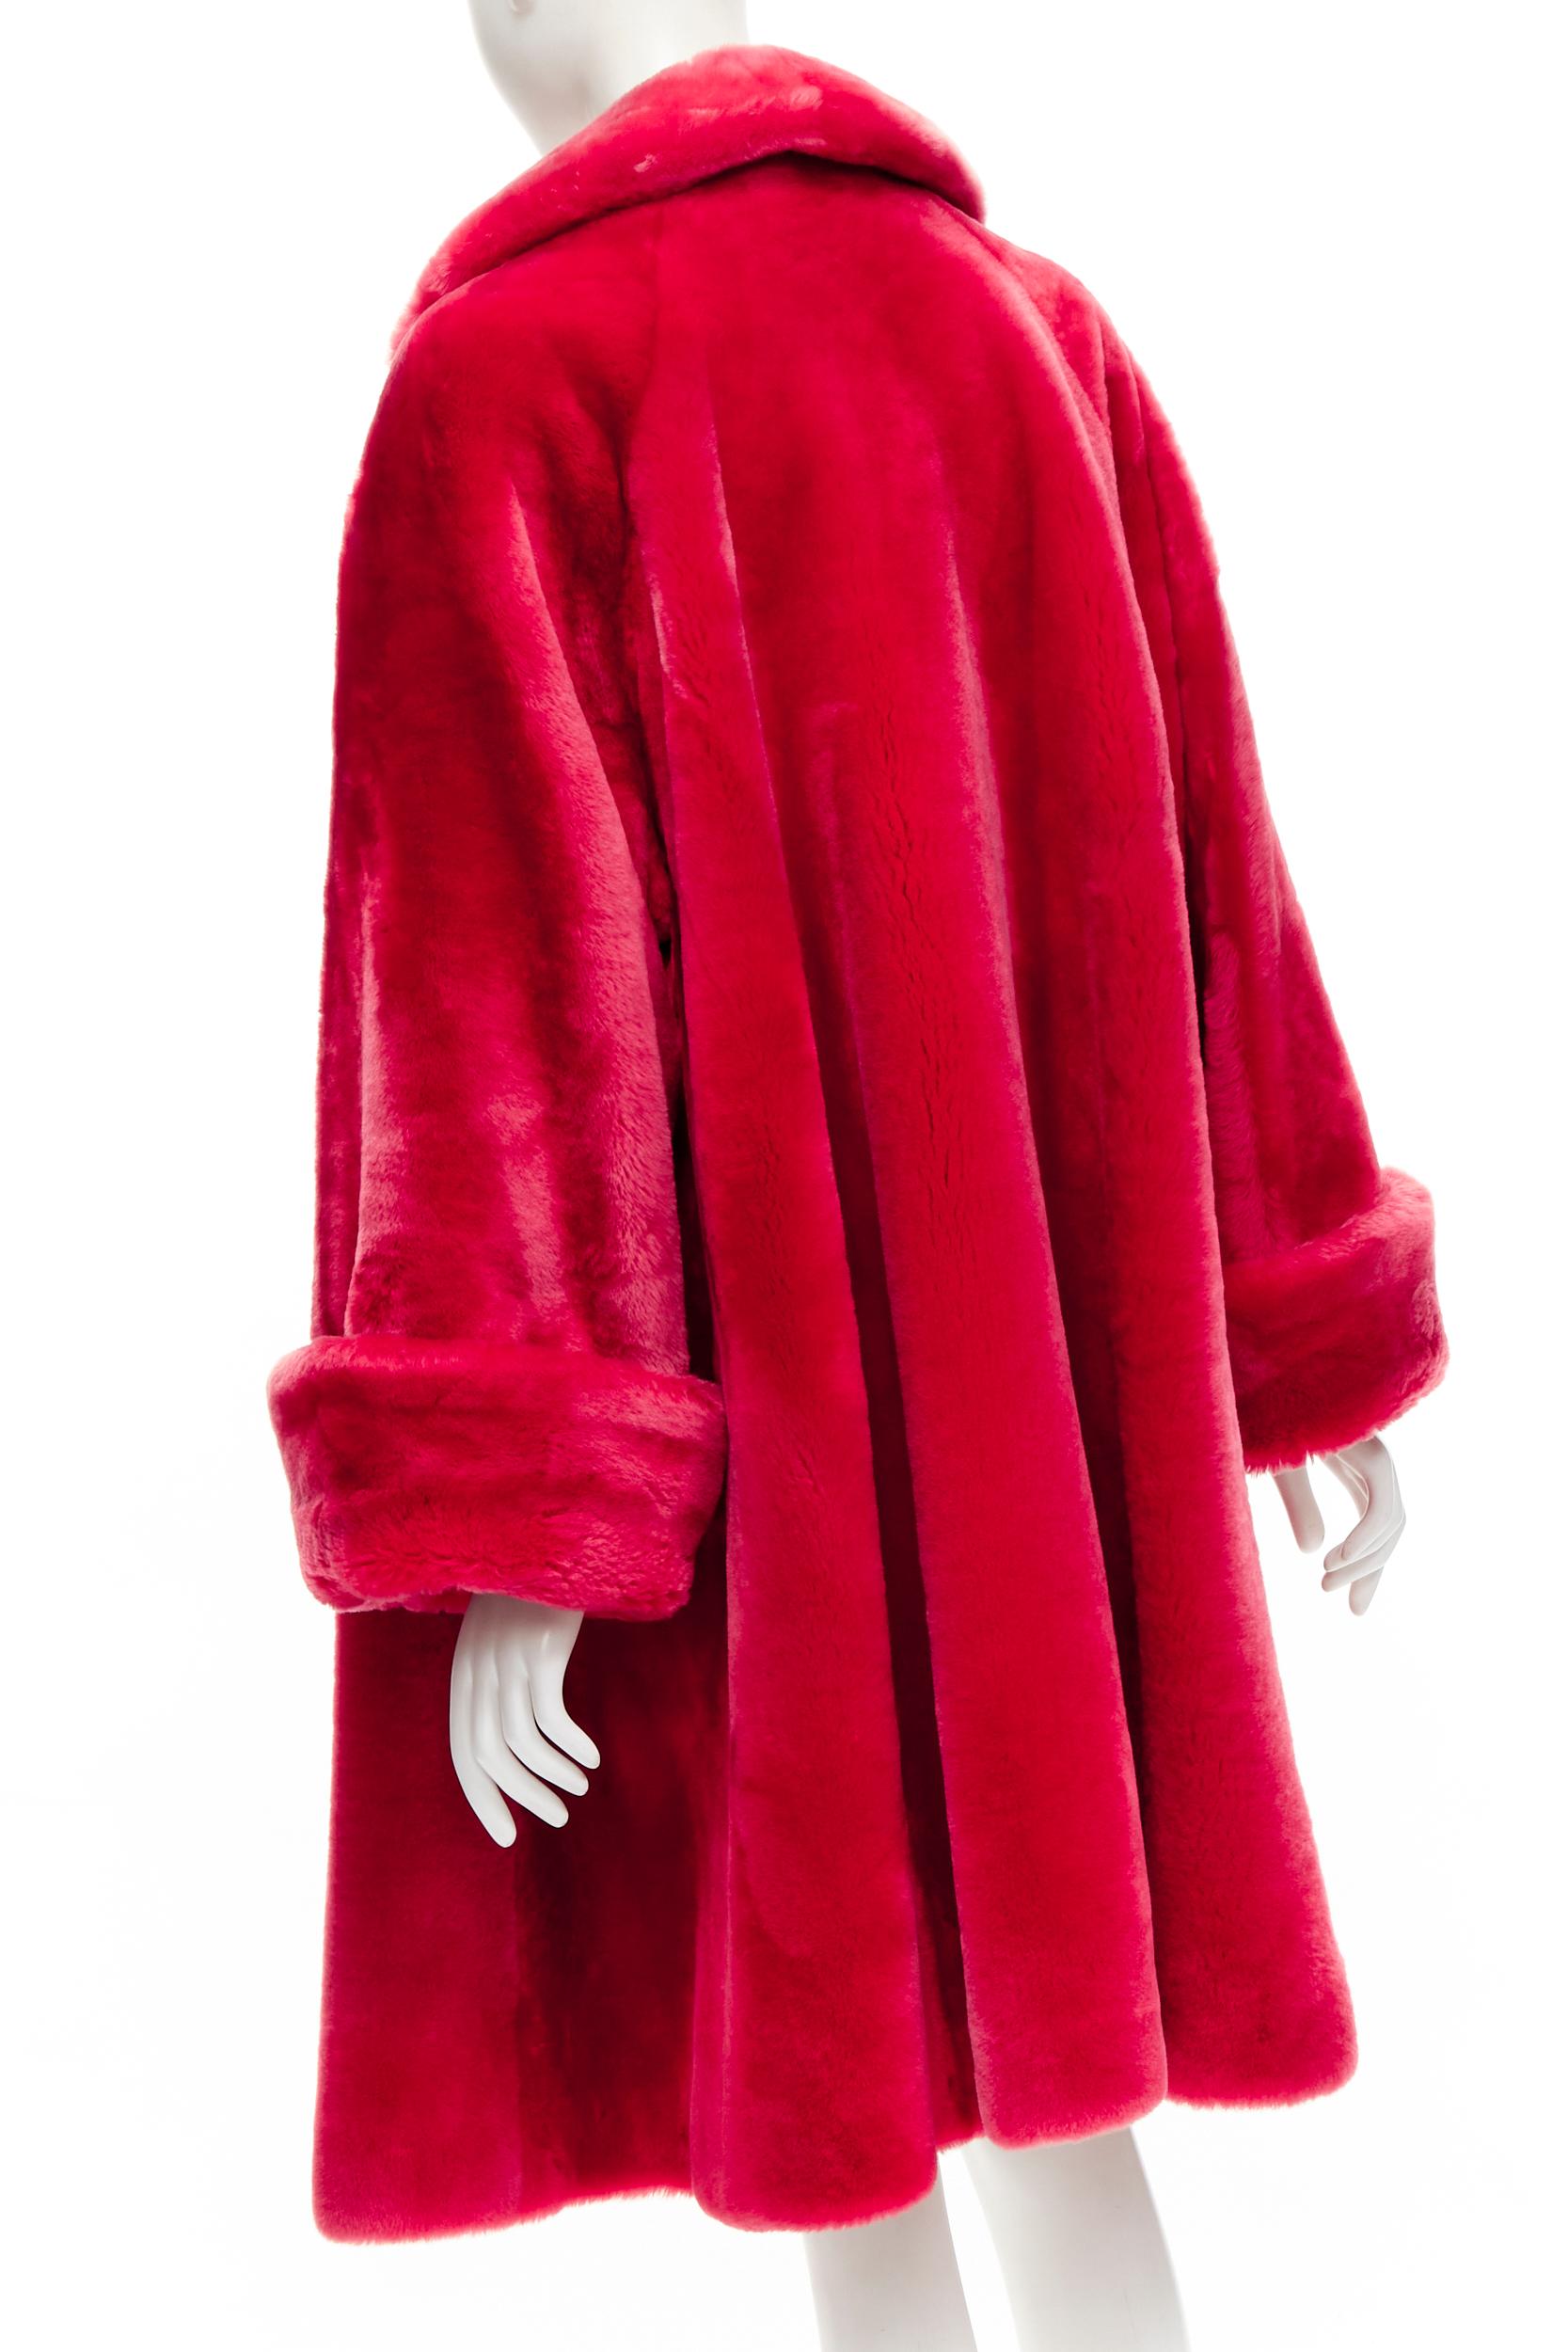 CHRISTIAN DIOR BOUTIQUE FOURRURE Vintage red faux fur swing mouton court coat For Sale 2